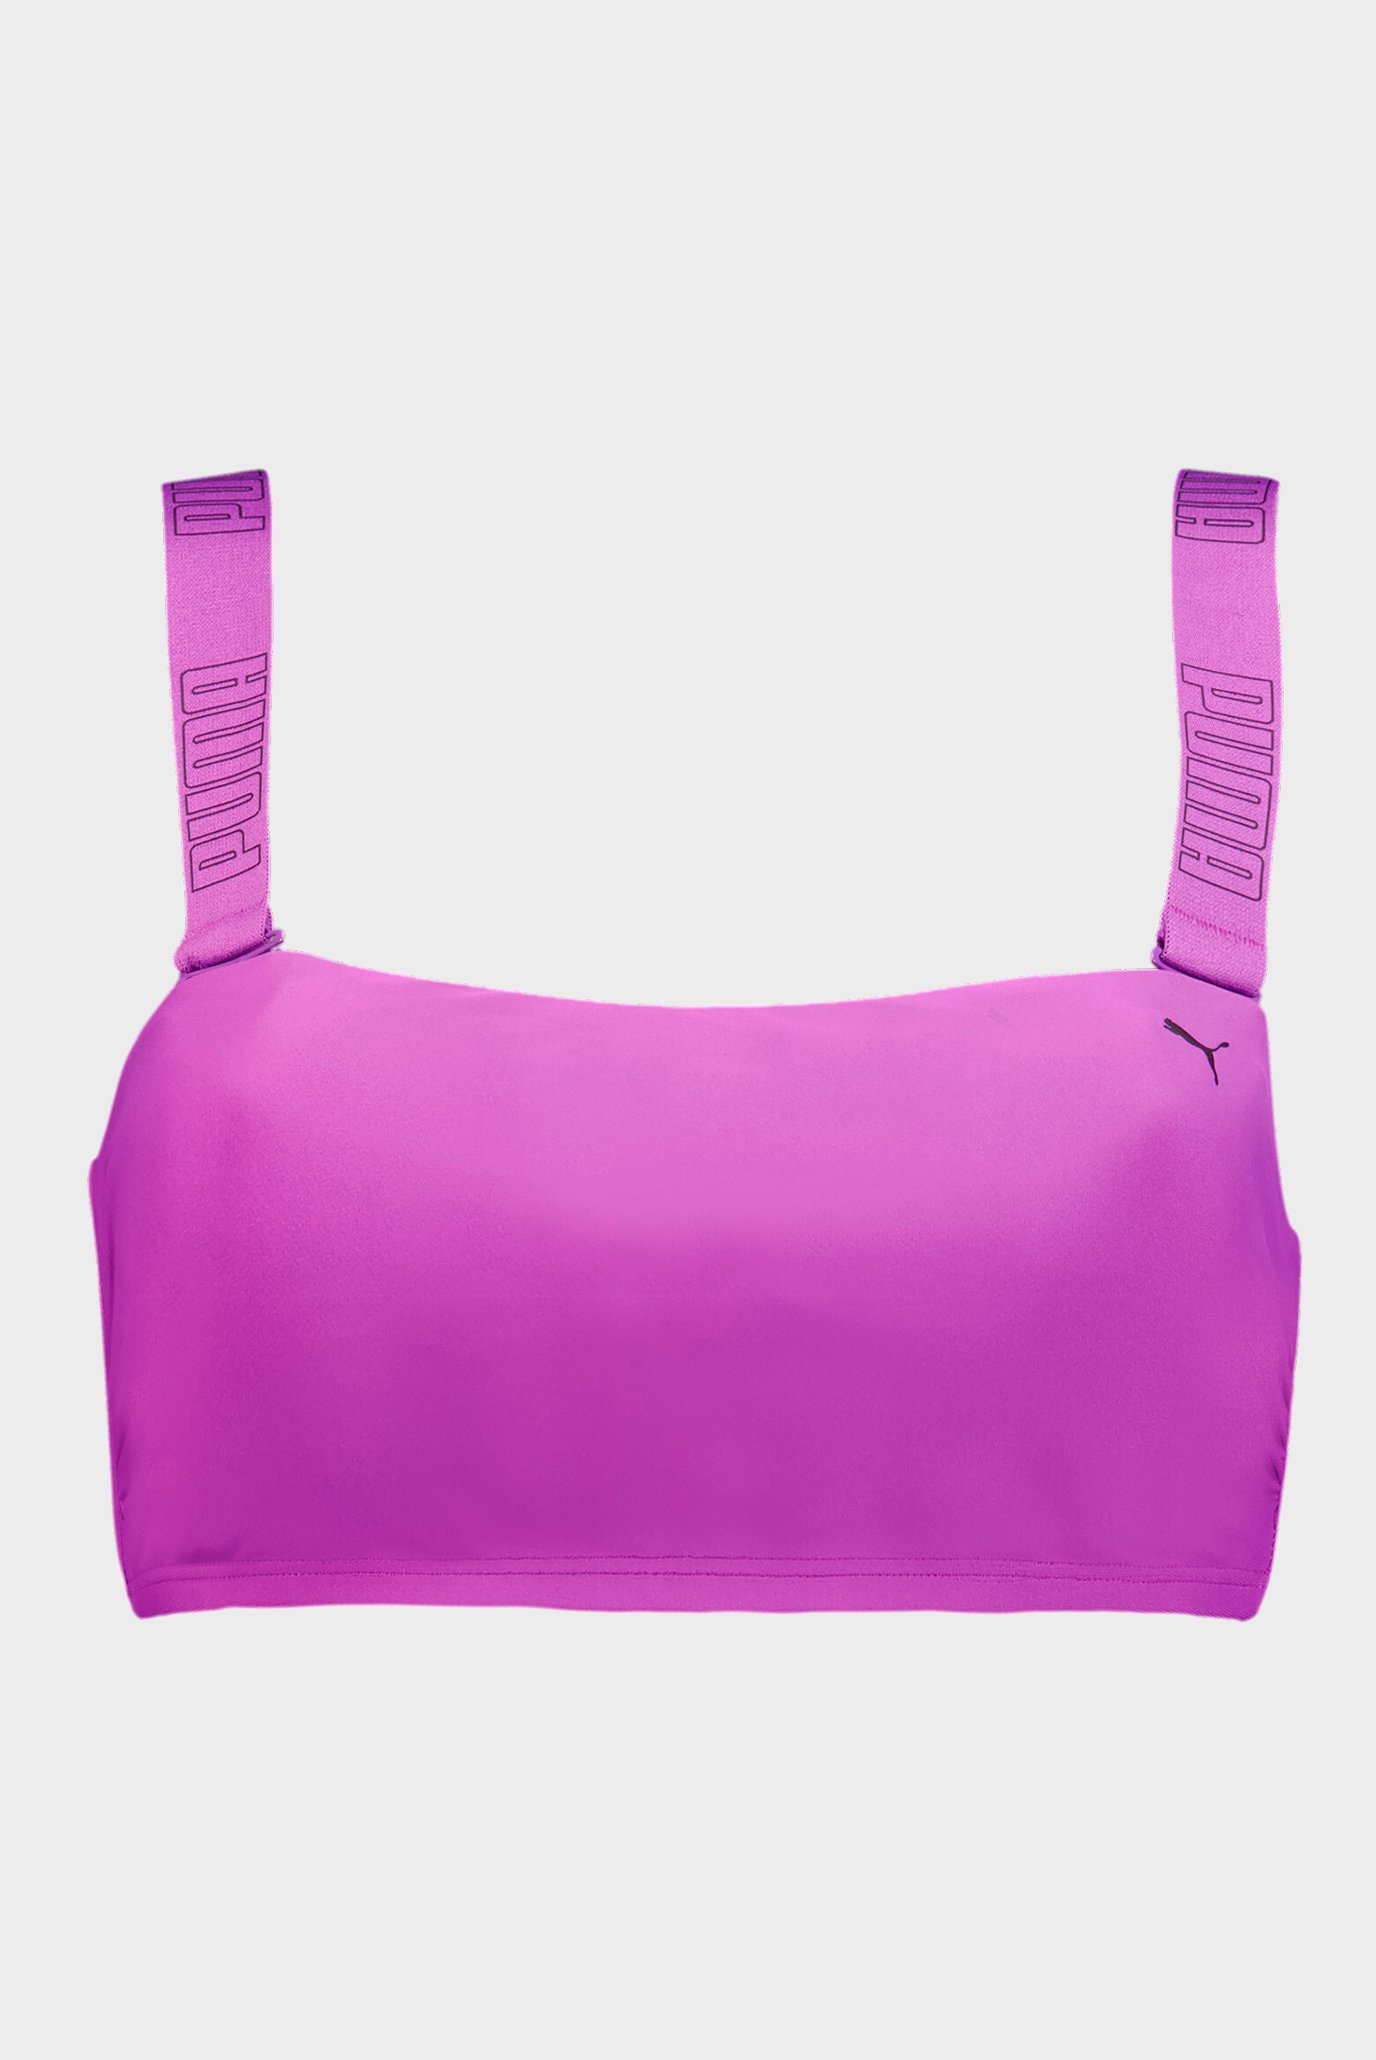 Женский фиолетовый лиф от купальника PUMA Women's Bandeau Top 1